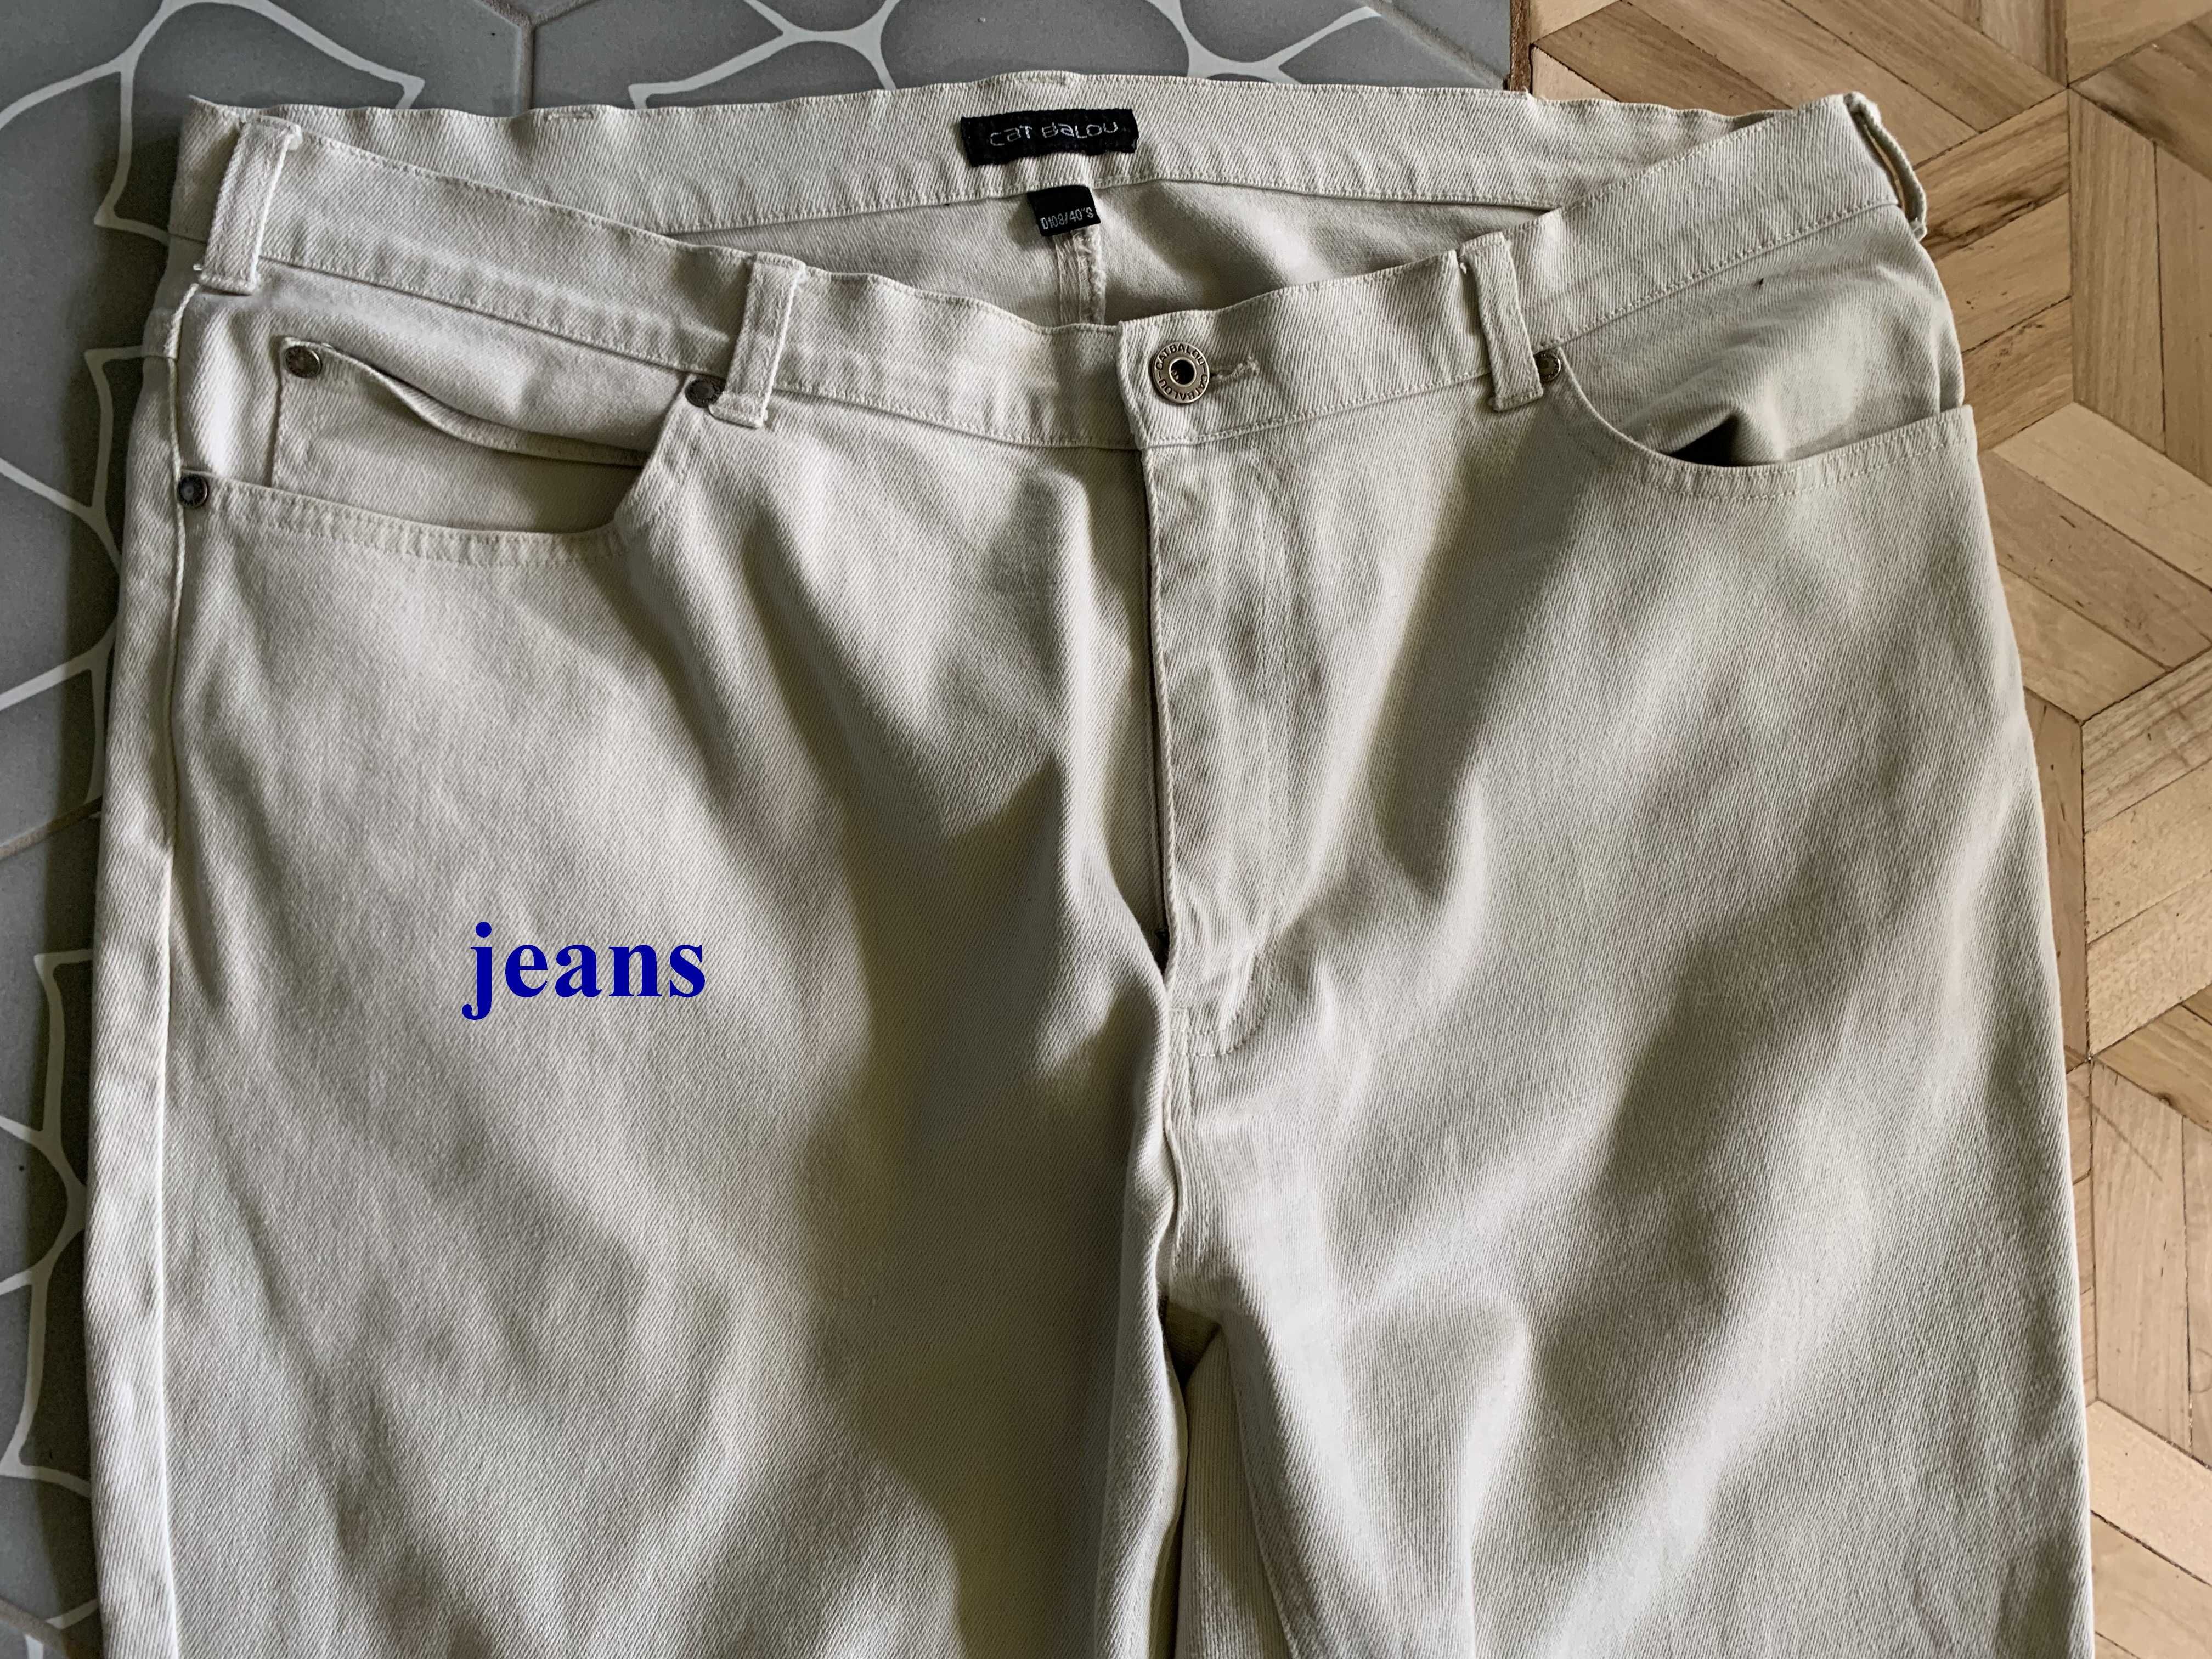 Duże jeansowe kremowe spodnie Cat Balou